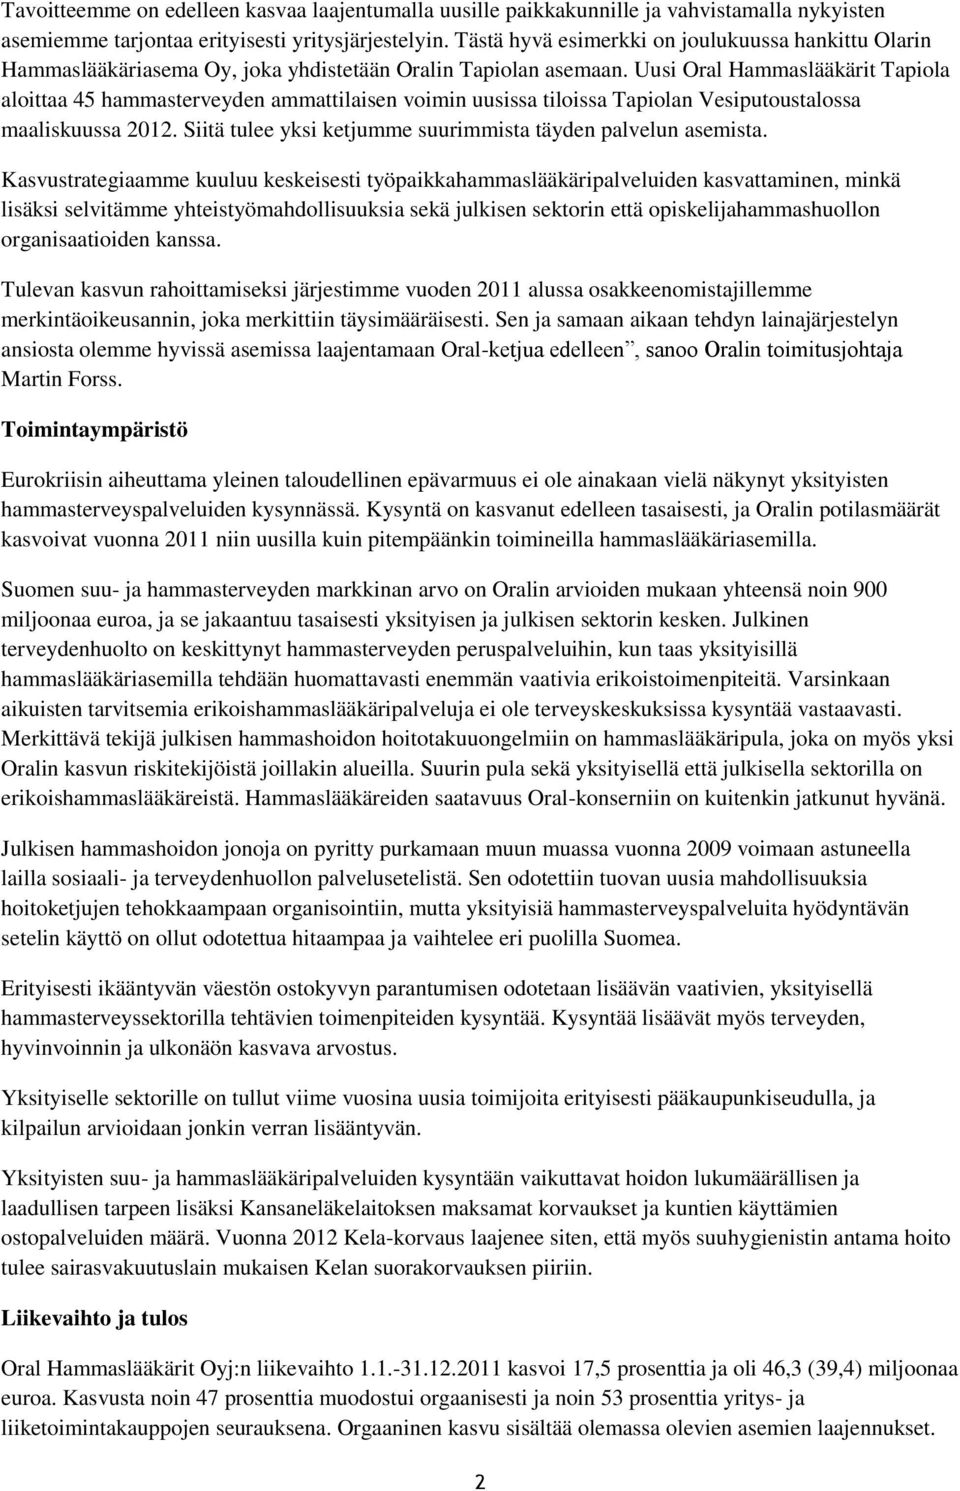 Uusi Oral Hammaslääkärit Tapiola aloittaa 45 hammasterveyden ammattilaisen voimin uusissa tiloissa Tapiolan Vesiputoustalossa maaliskuussa 2012.